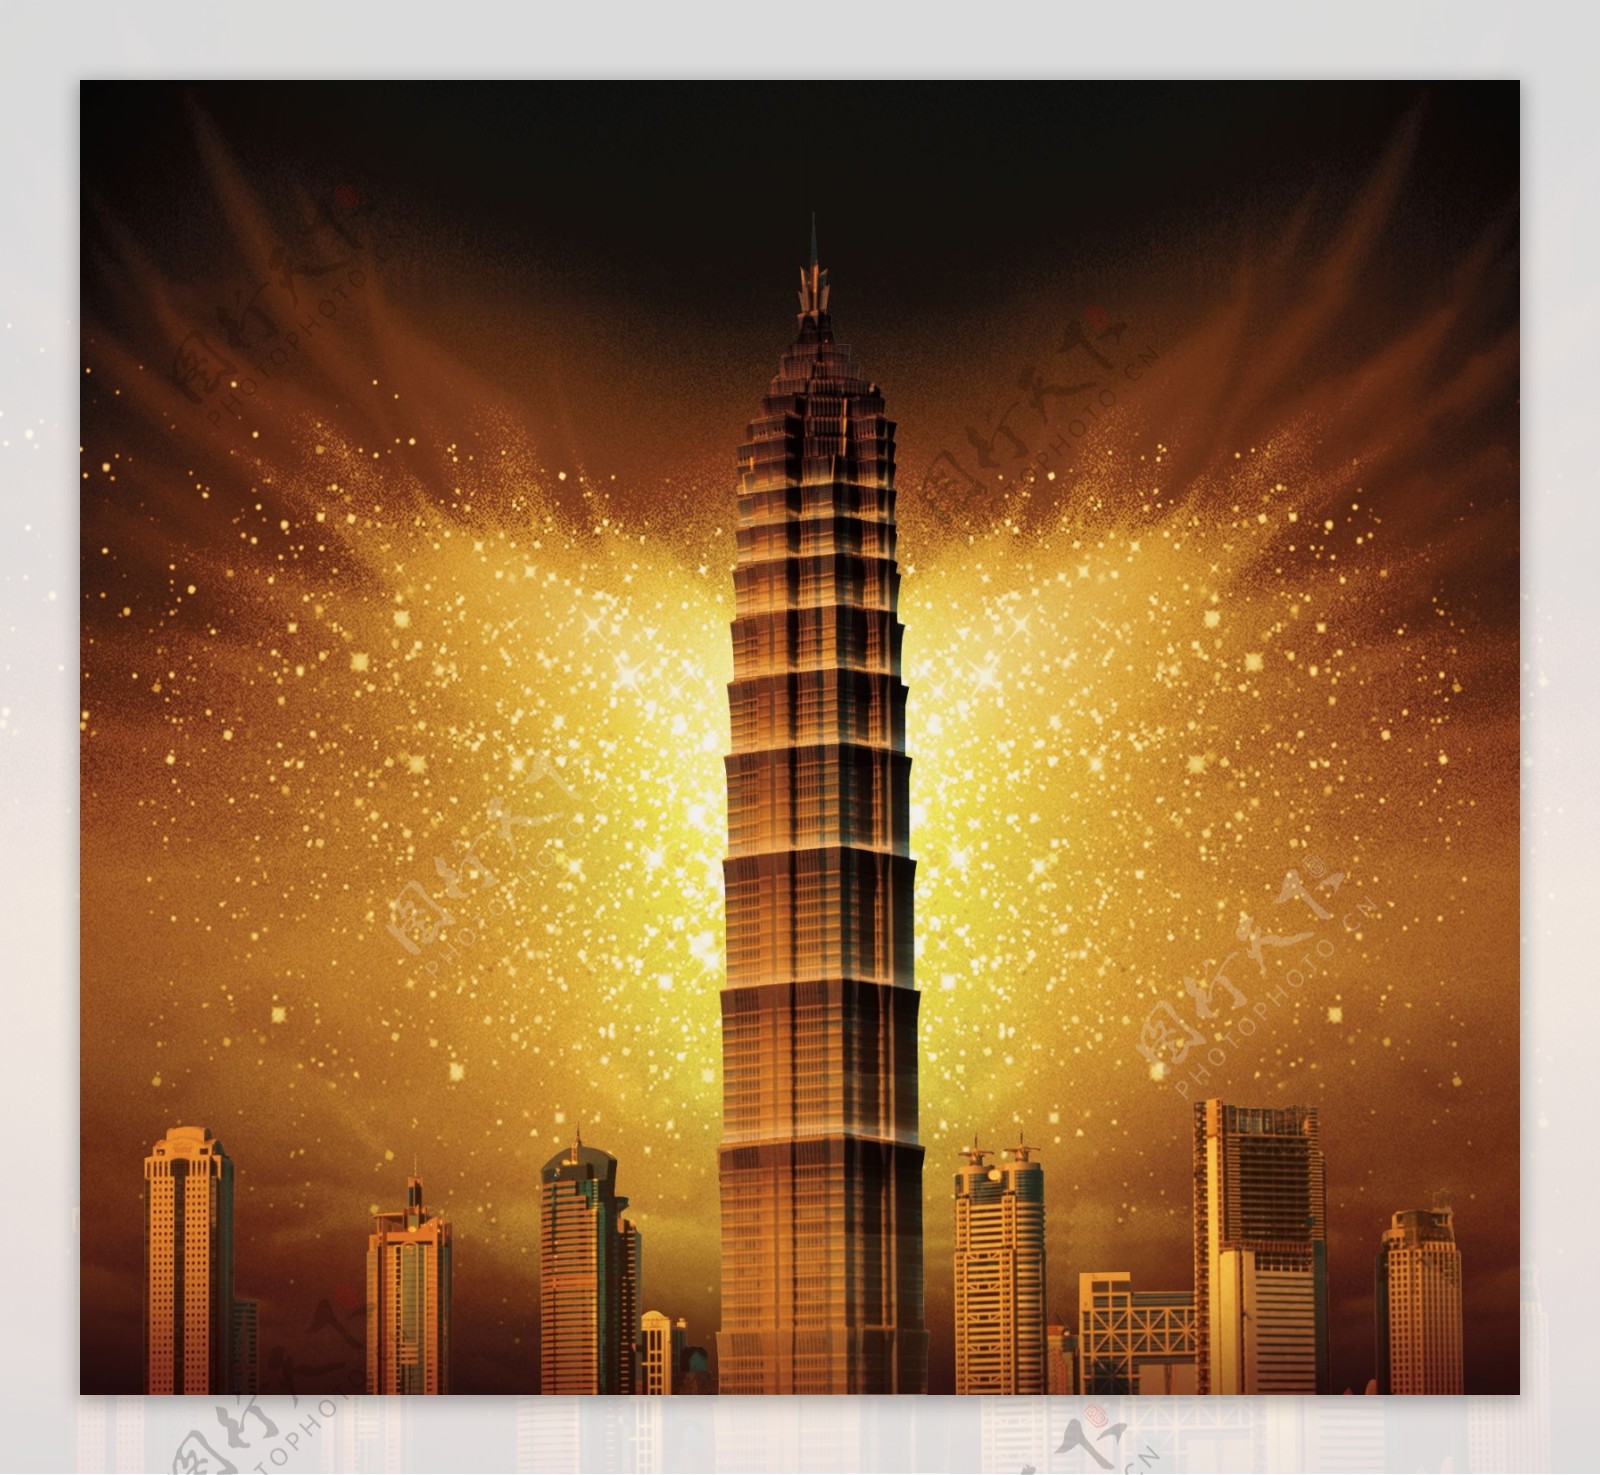 高楼宝塔欧式建筑大厦金色天空城市发展图片